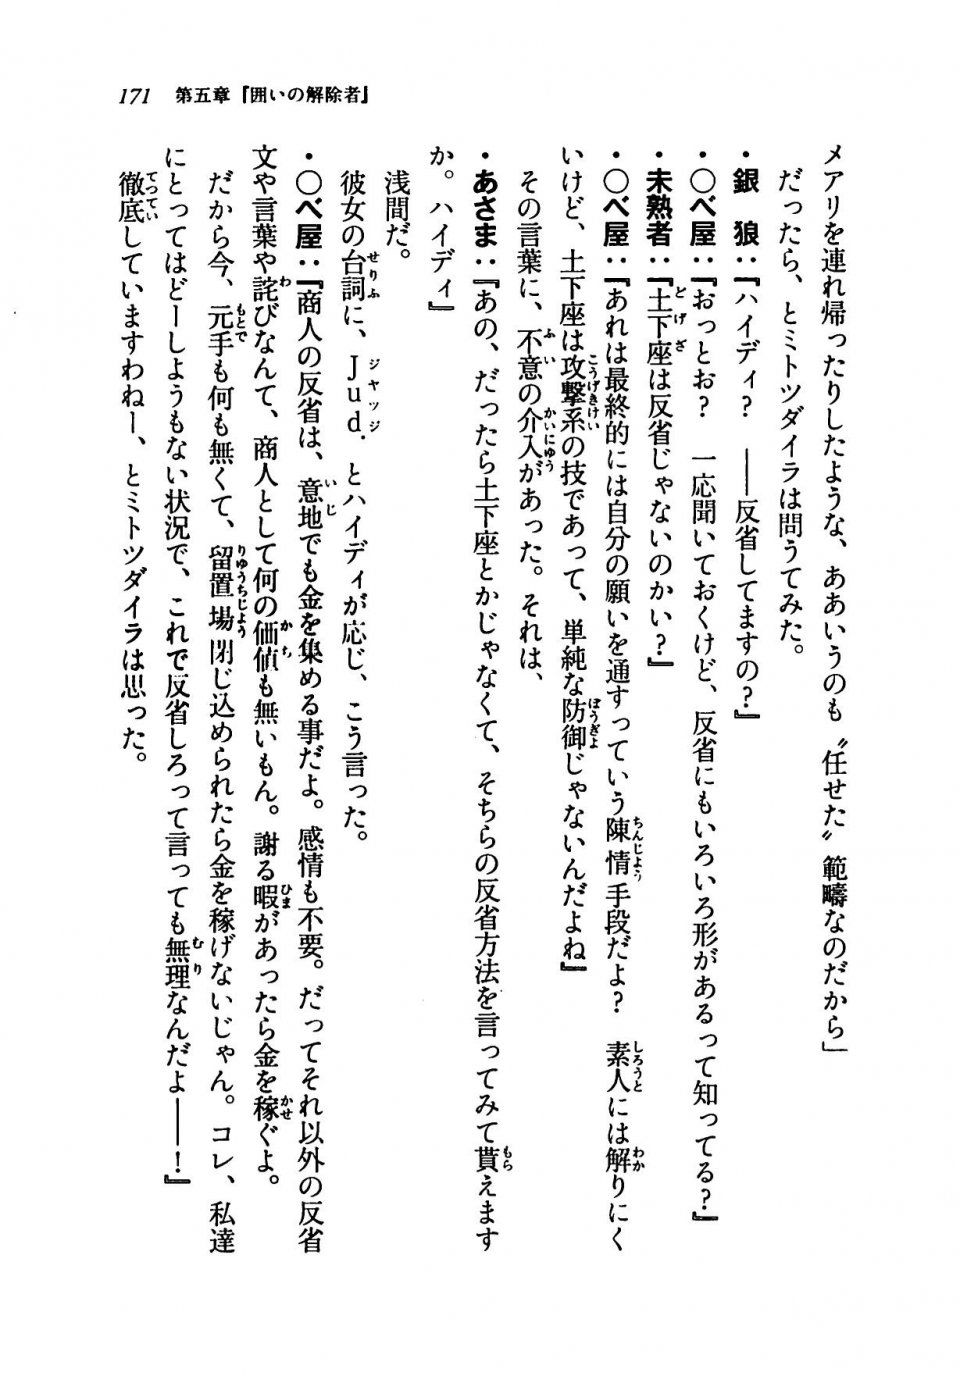 Kyoukai Senjou no Horizon LN Vol 19(8A) - Photo #171